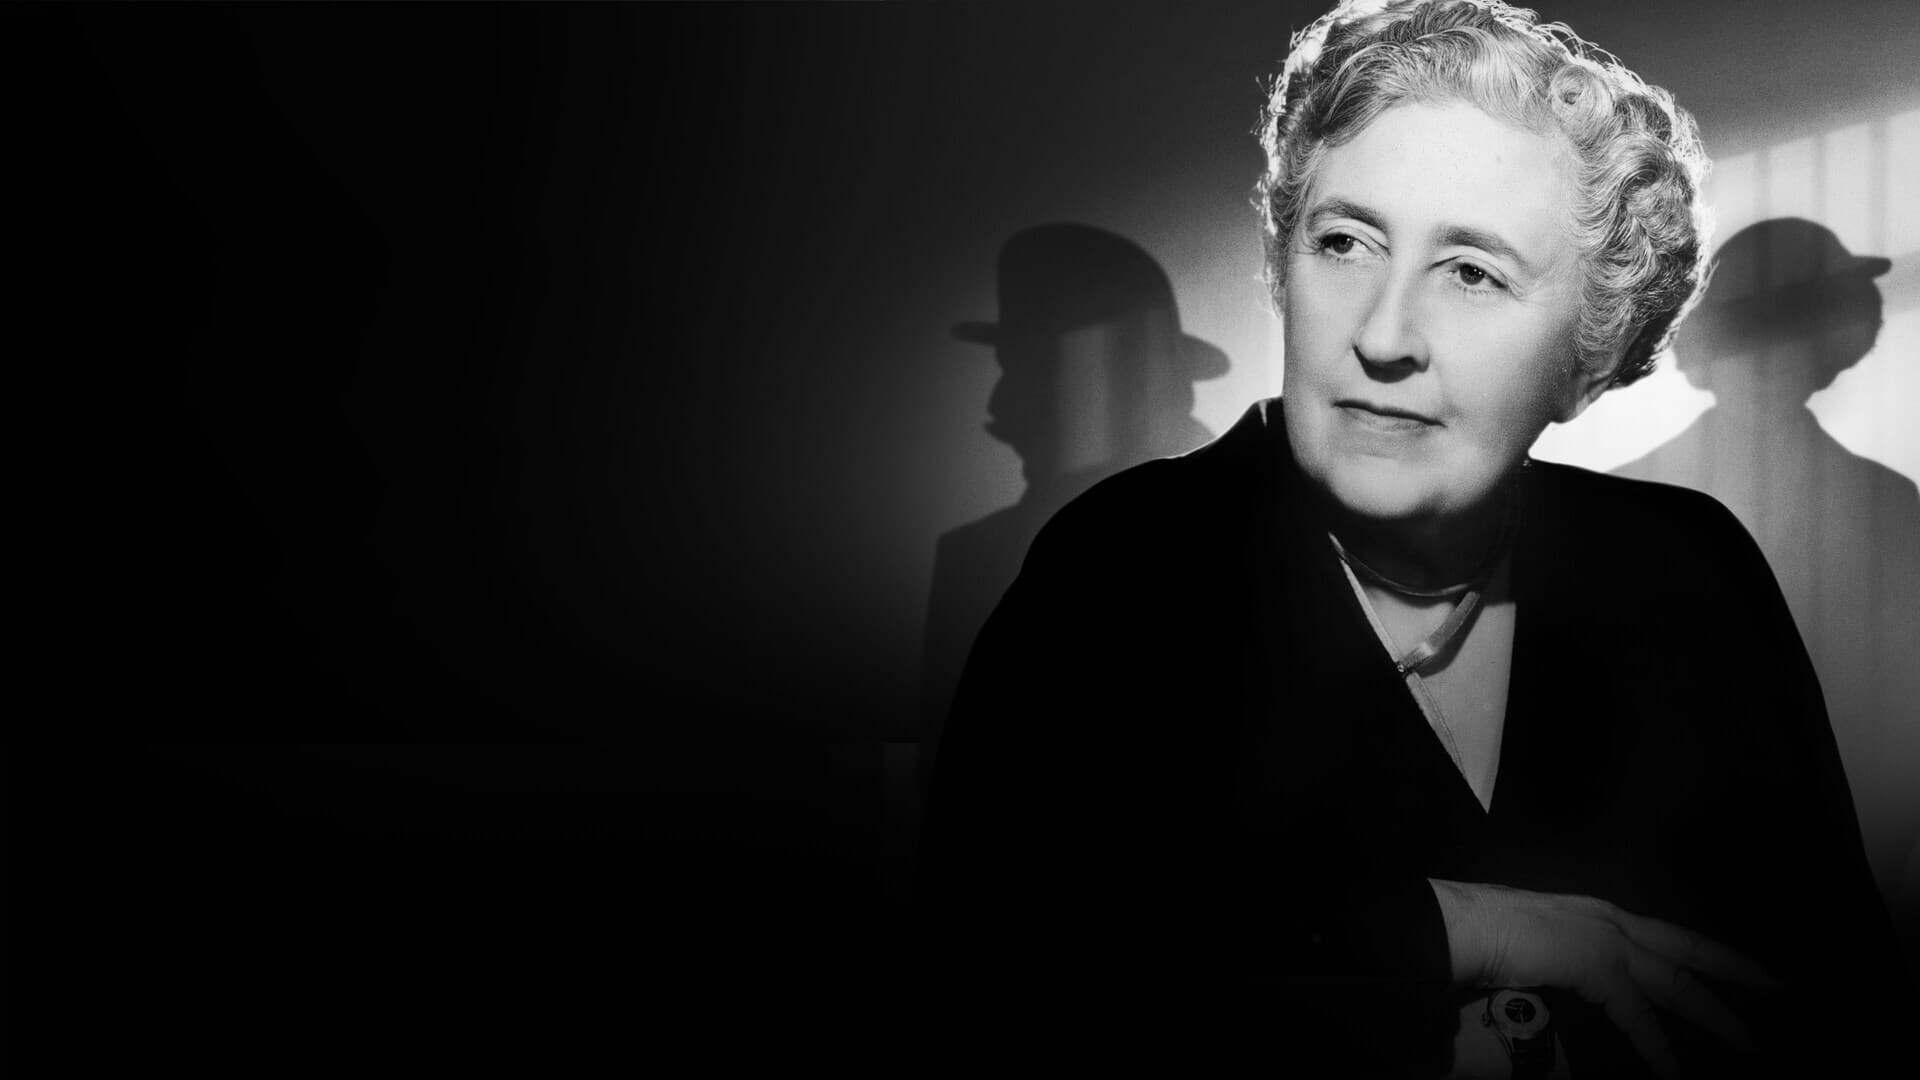 აგატა კრისტი: გაურკვეველი მოლოდინის 100 წელი / Agatha Christie: 100 Years of Suspense